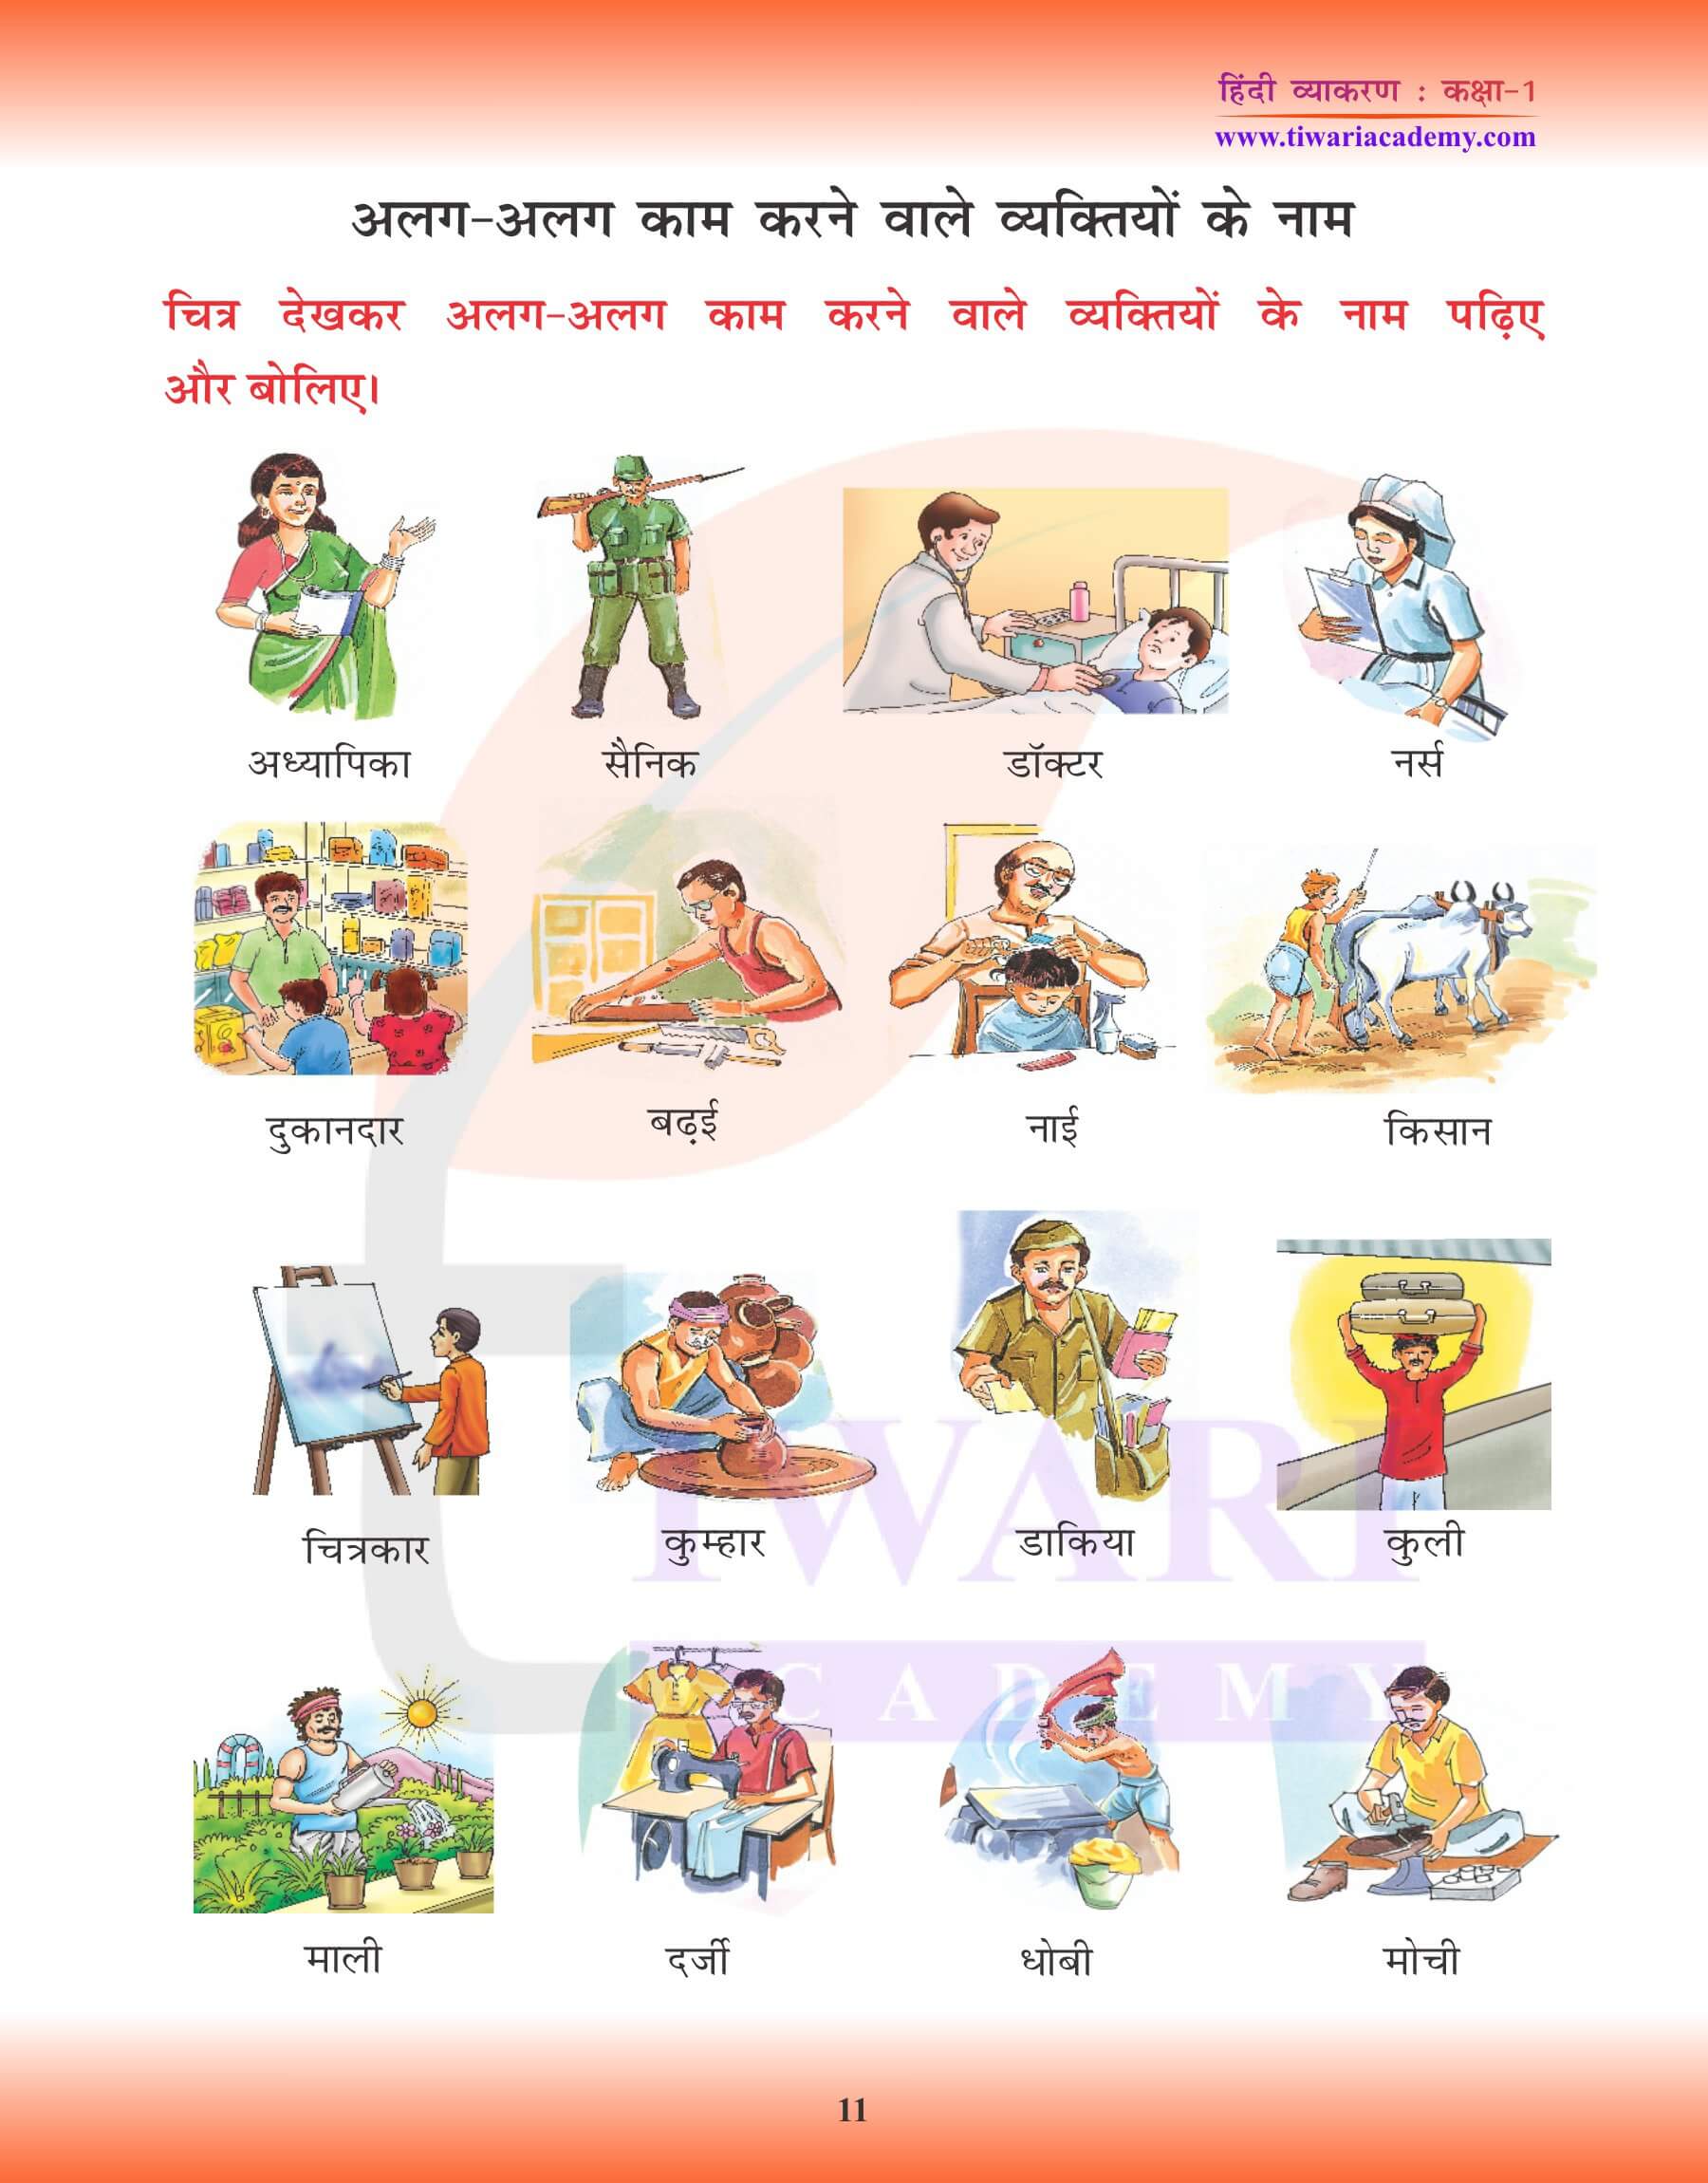 कक्षा 1 के लिए हिंदी व्याकरण में संज्ञा के प्रश्न